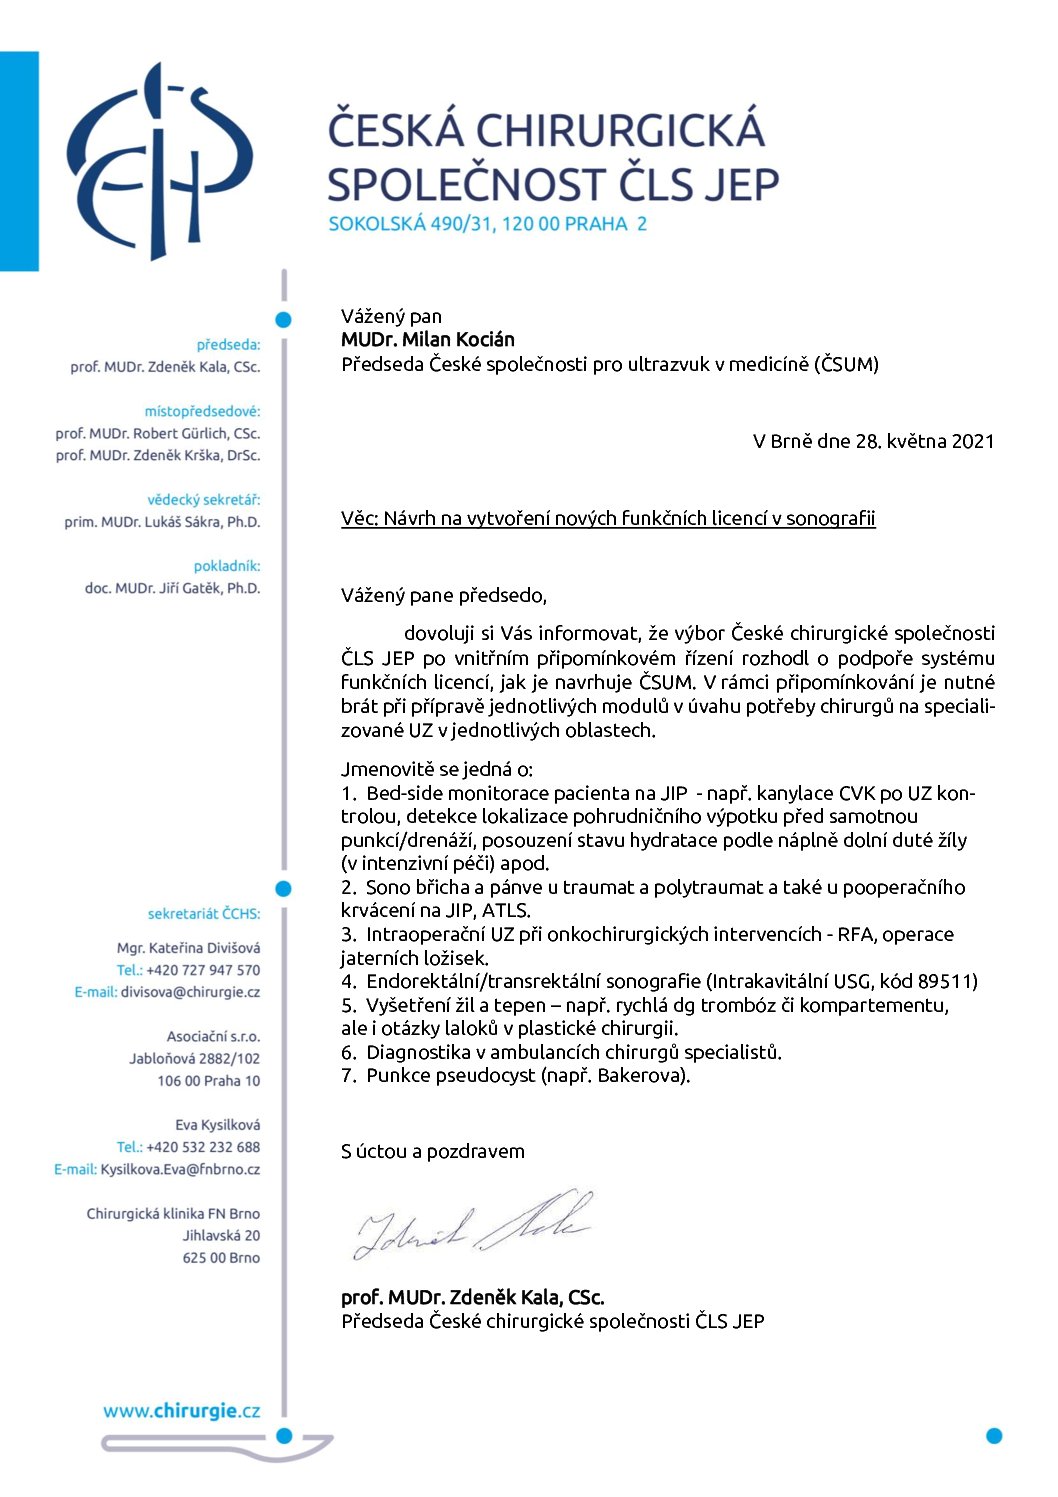 Stanovisko výboru ČCHS ČLS JEP k Návrhu na vytvoření nových funkčních licencí v sonografii (28. 5. 2021)